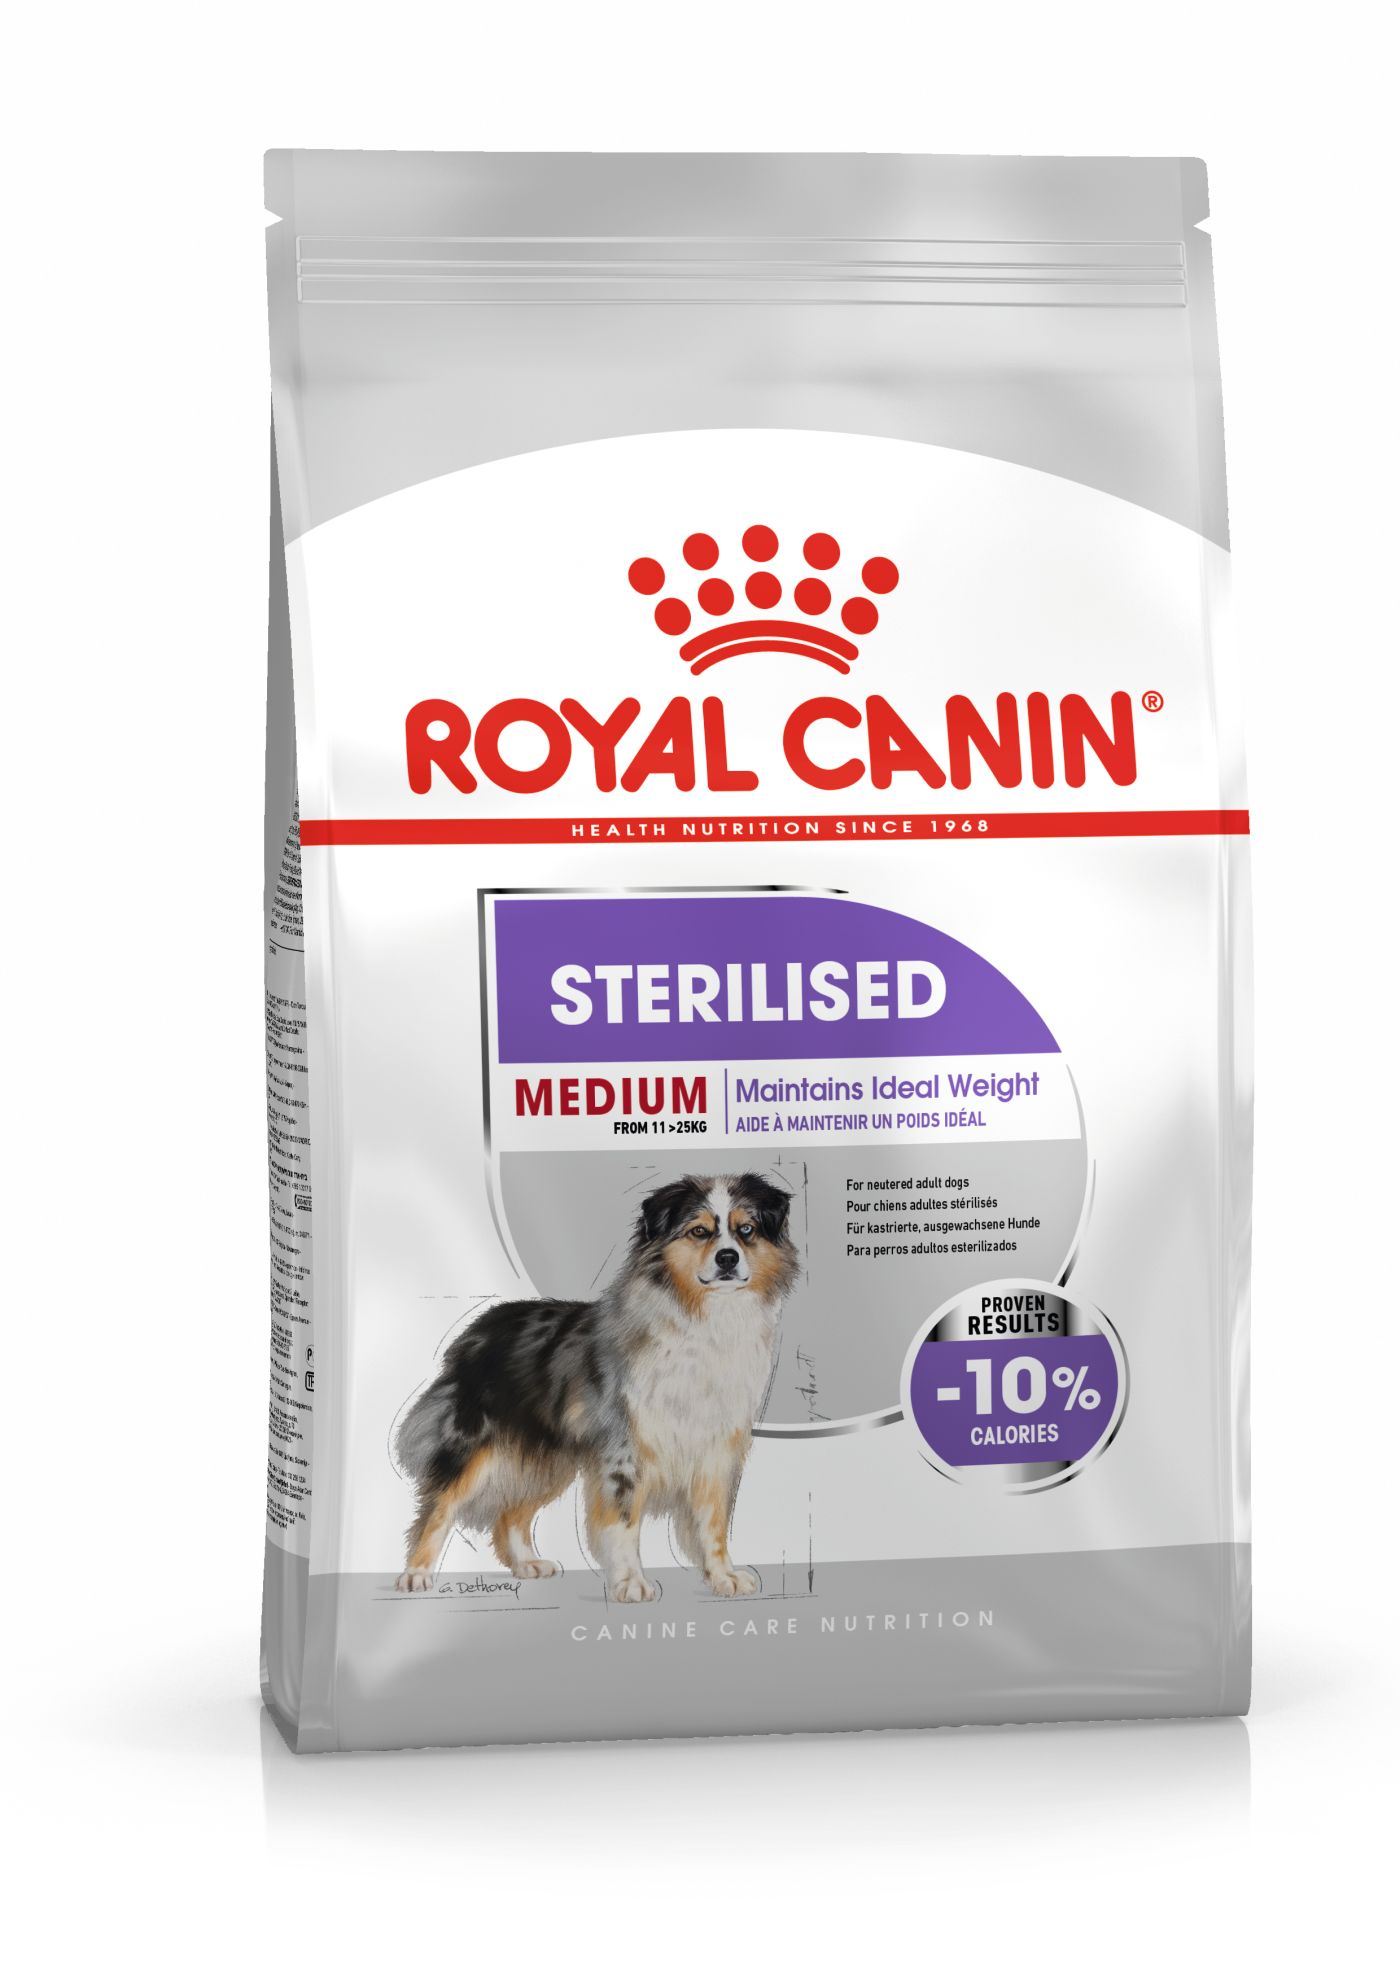 Royal Canin Sterilised Dog Food Online Shopping